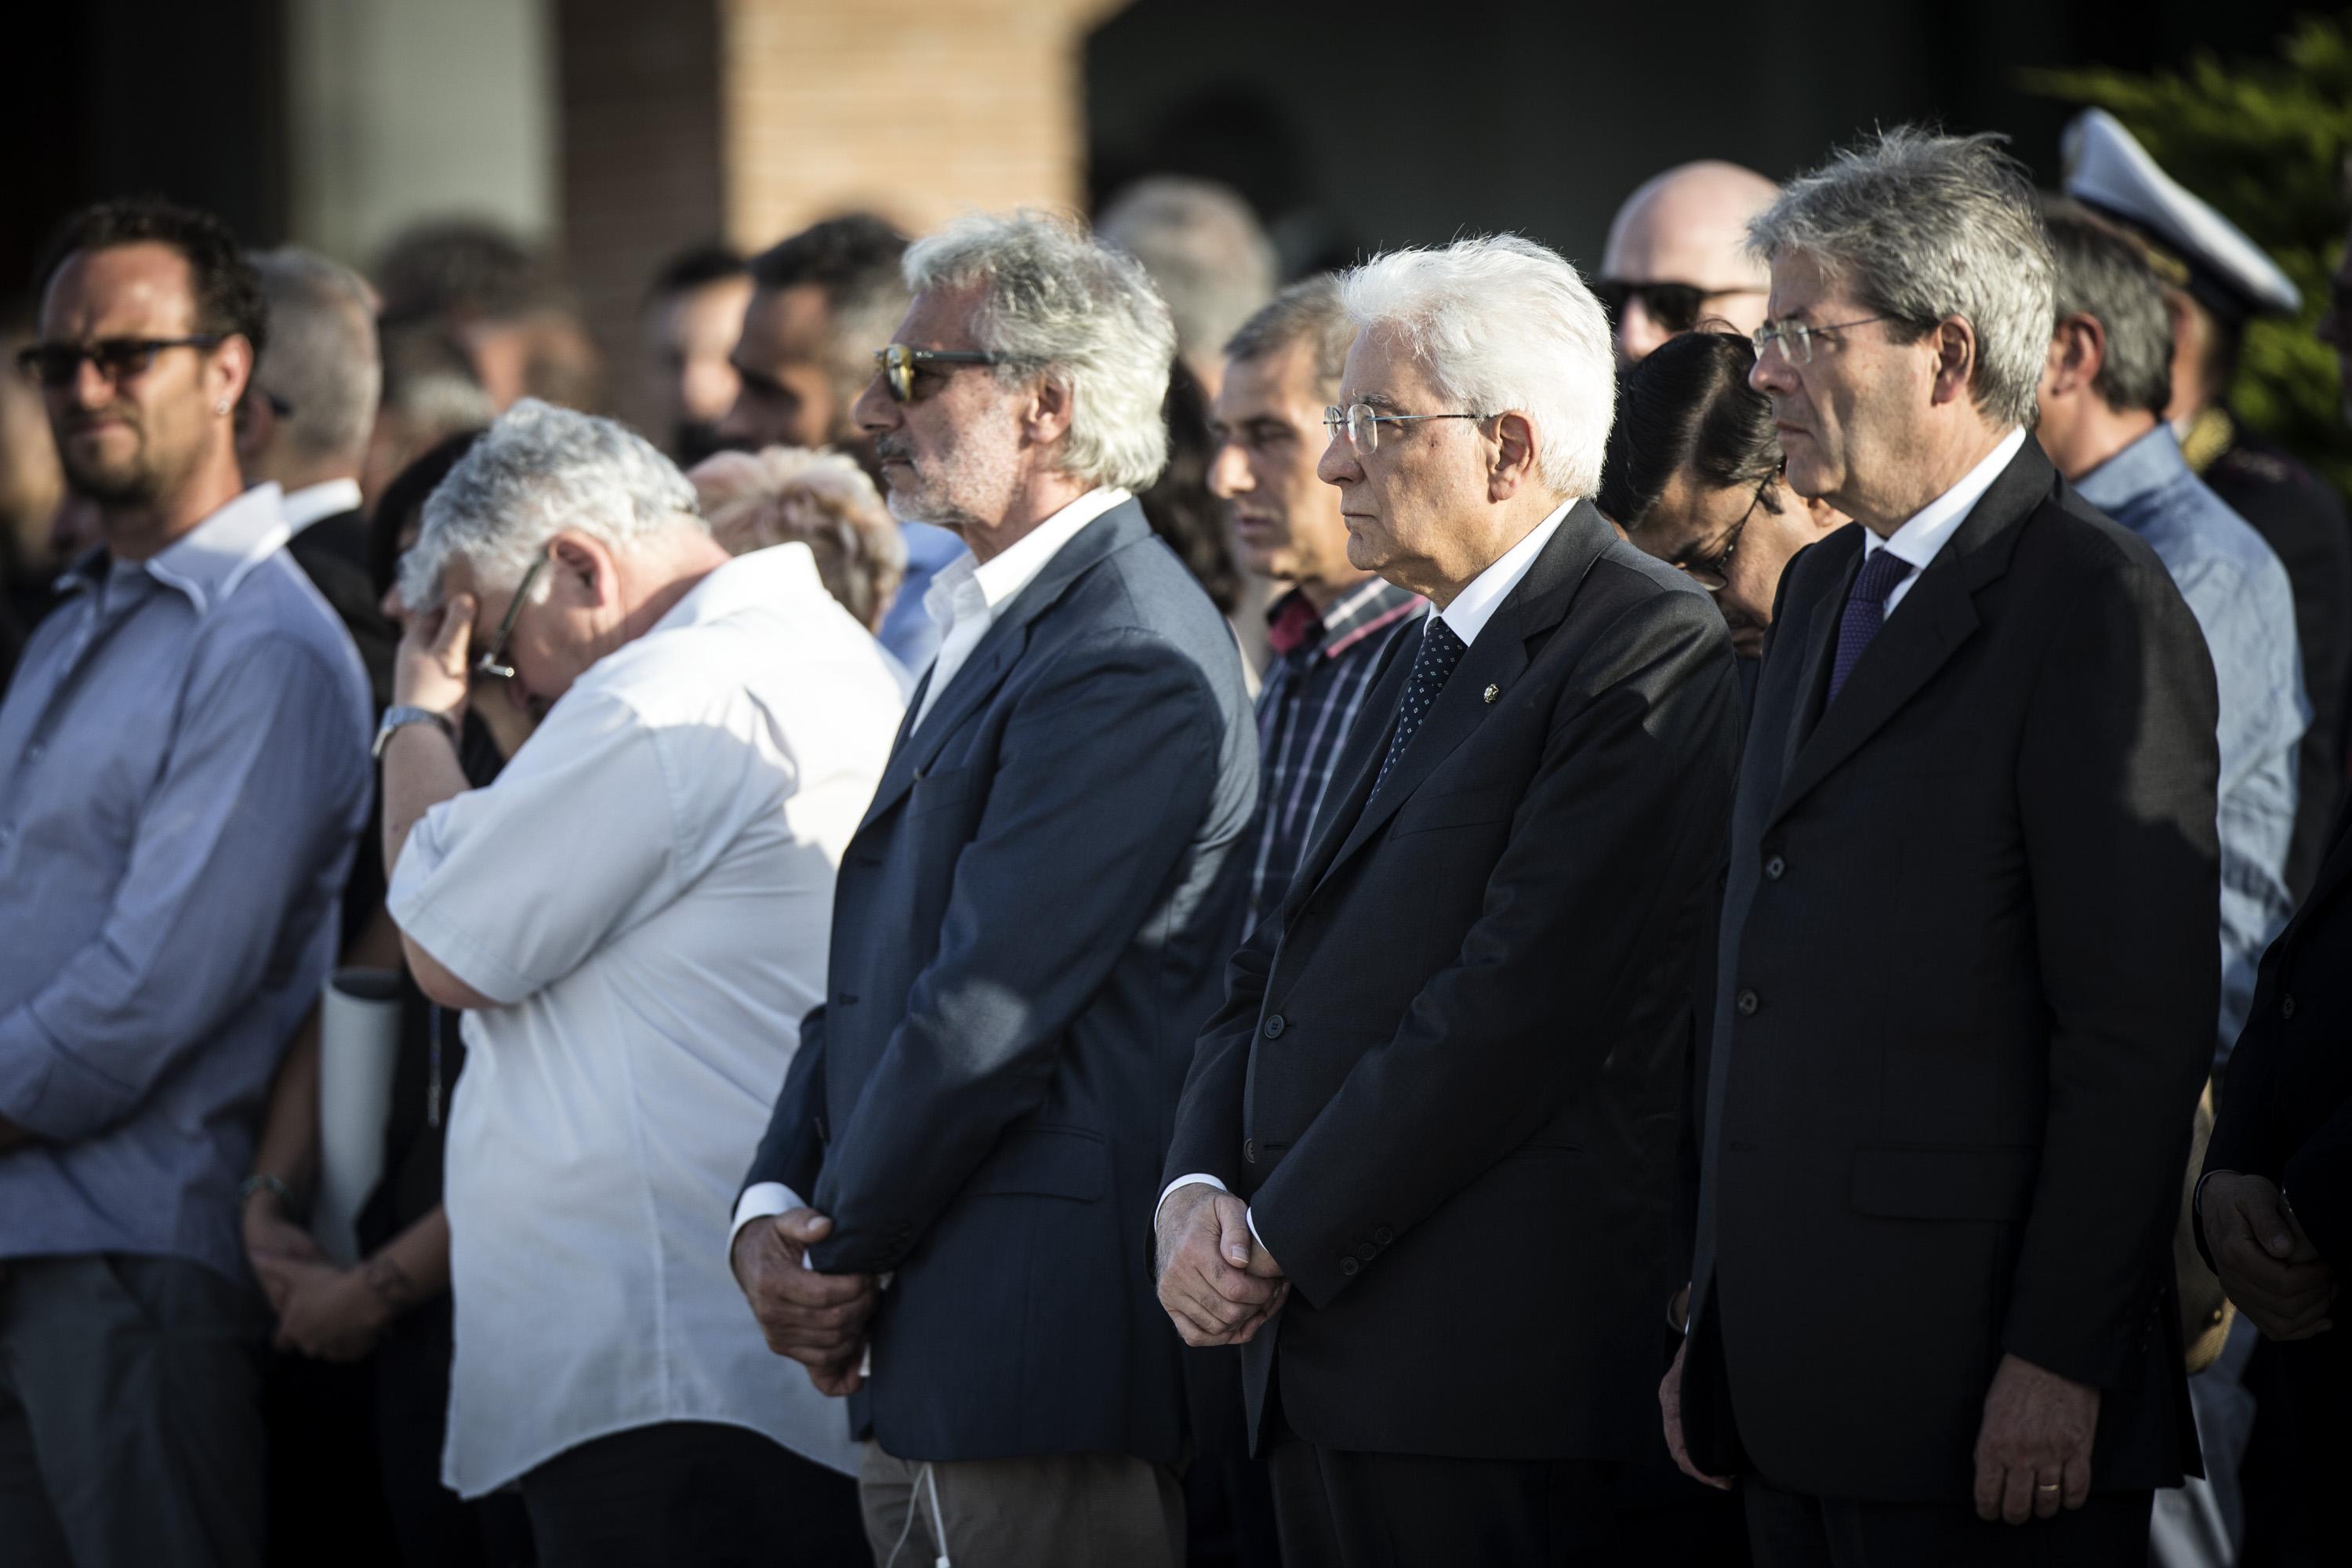 Il Ministro Gentiloni insieme al Presidente Mattarella saluta il rientro delle salme dei connazionali in Italia